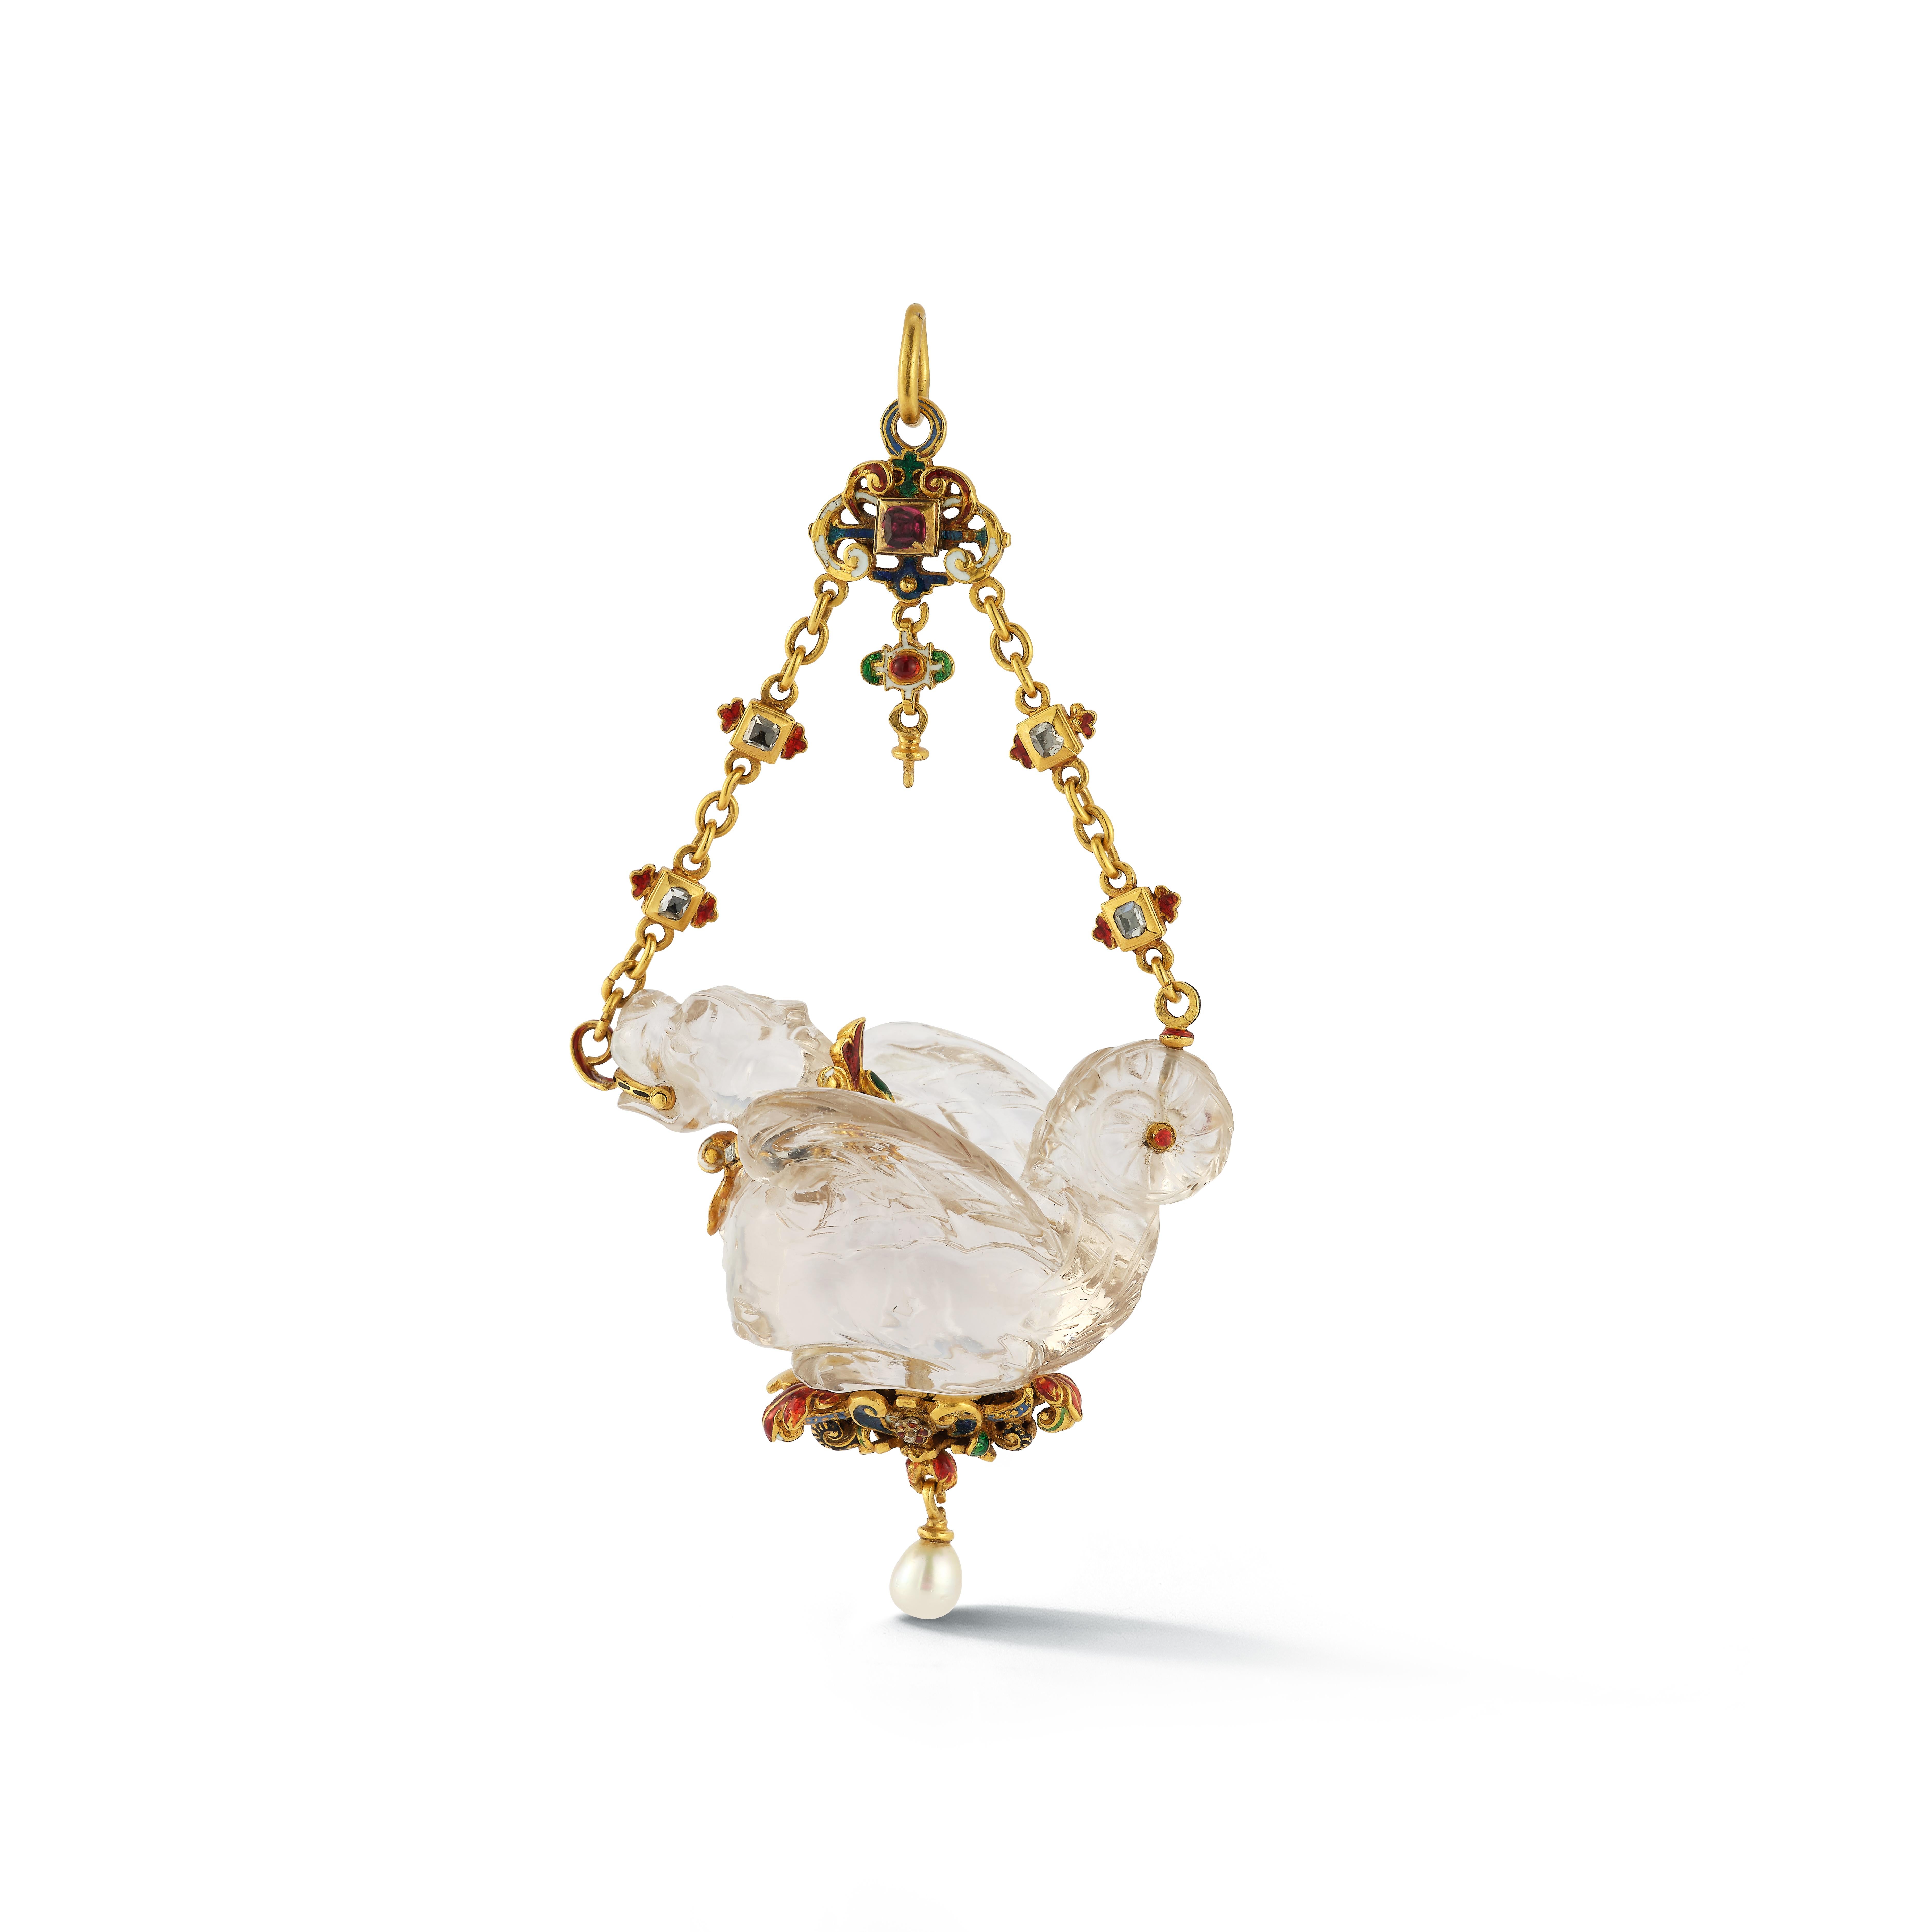 Renaissance Revival Bergkristall-Drachen-Anhänger-

Ein Bergkristalldrache, gefasst in 18 Karat Gold, besetzt mit Diamanten, einer Perle und Rubinen

Länge: 4.5